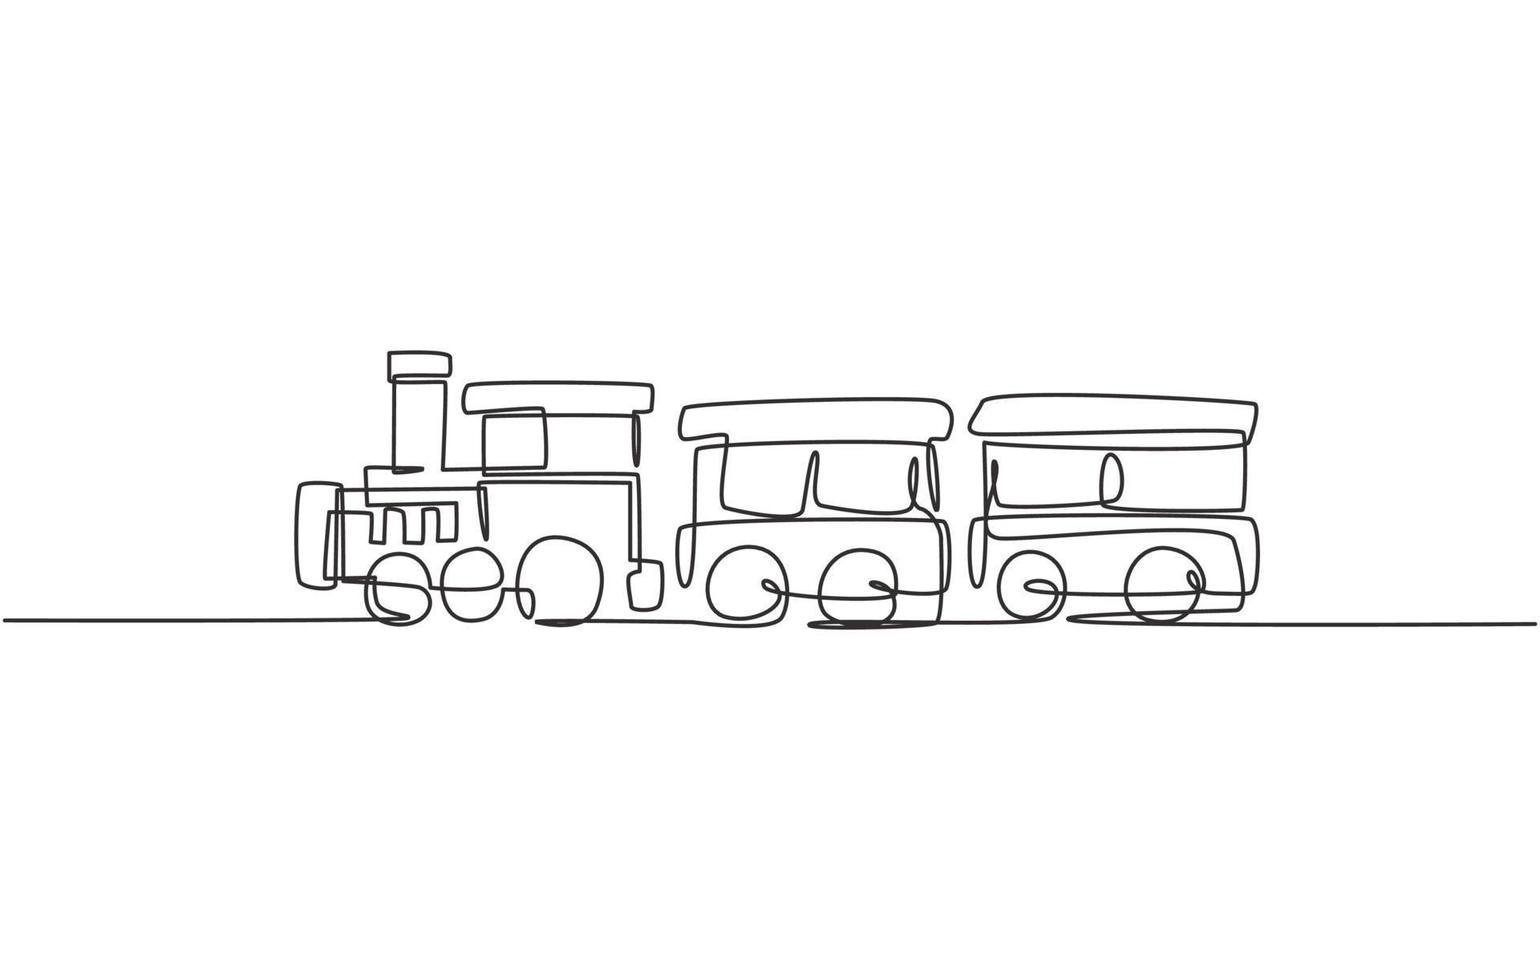 einzelne durchgehende Linienzeichnung eines Lokomotivzugs mit zwei Waggons in Form eines umherziehenden Dampfsystems im Vergnügungspark zum Transport von Passagieren. eine linie zeichnen grafikdesign-vektorillustration vektor